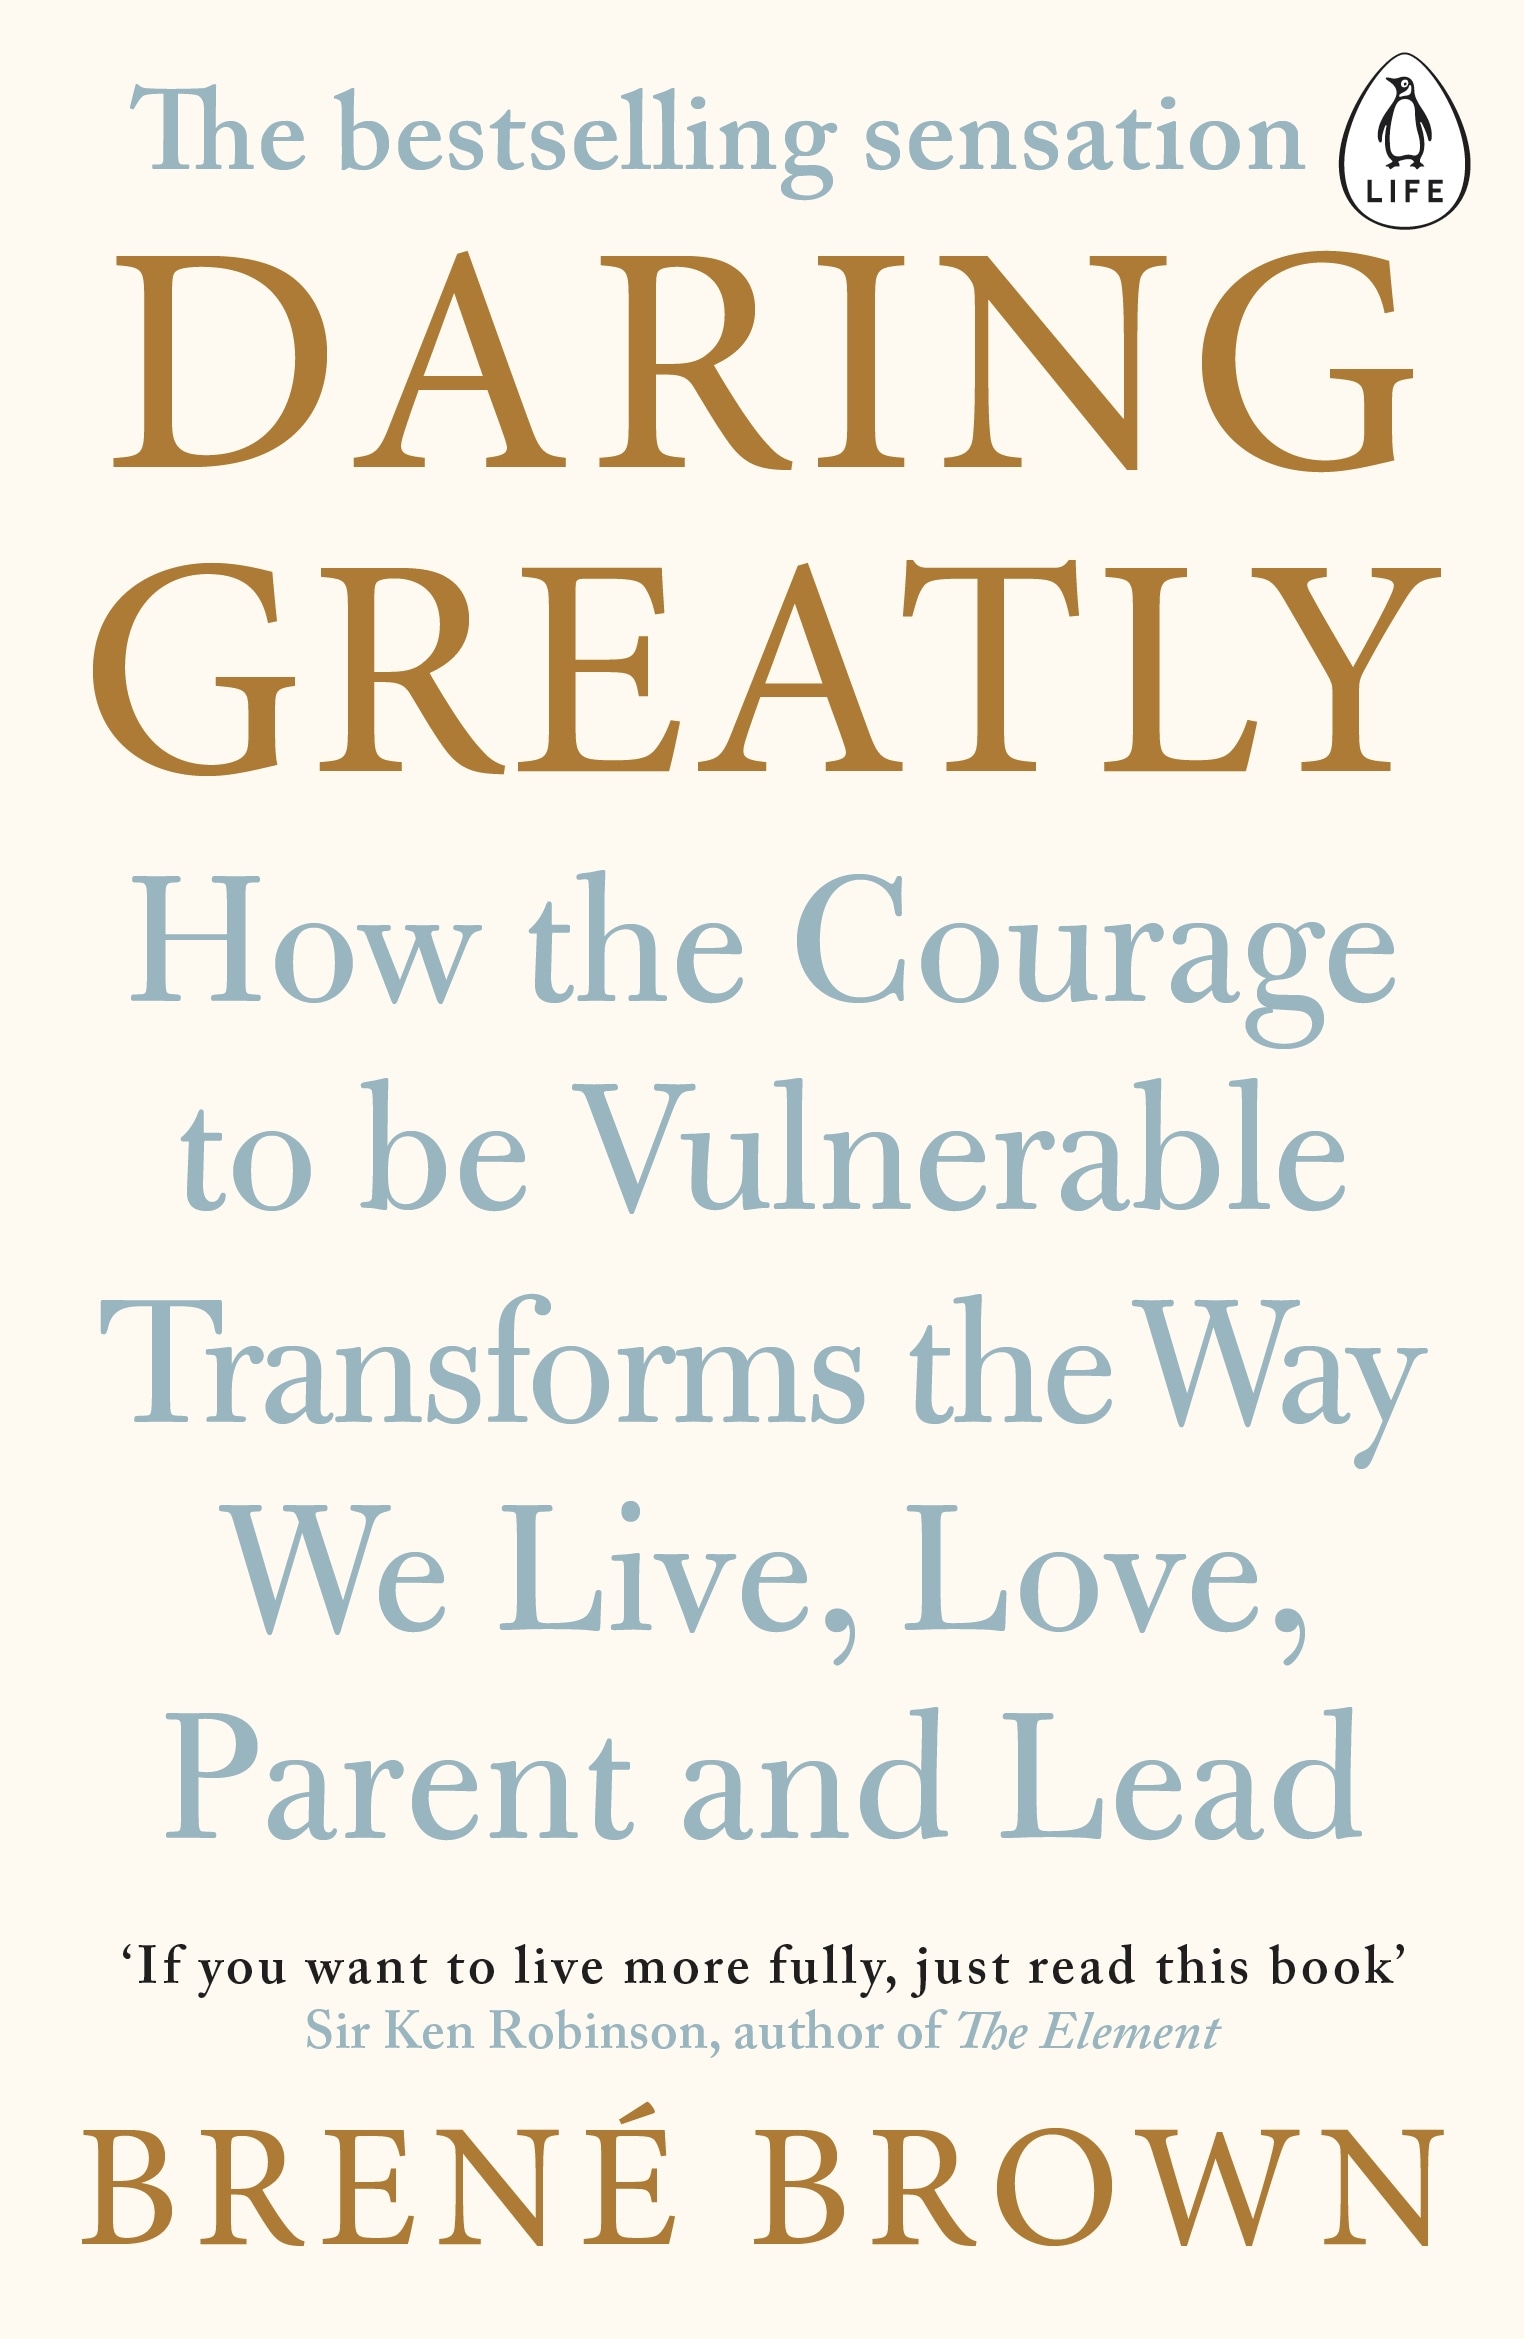 Book “Daring Greatly” by Brené Brown — December 3, 2015